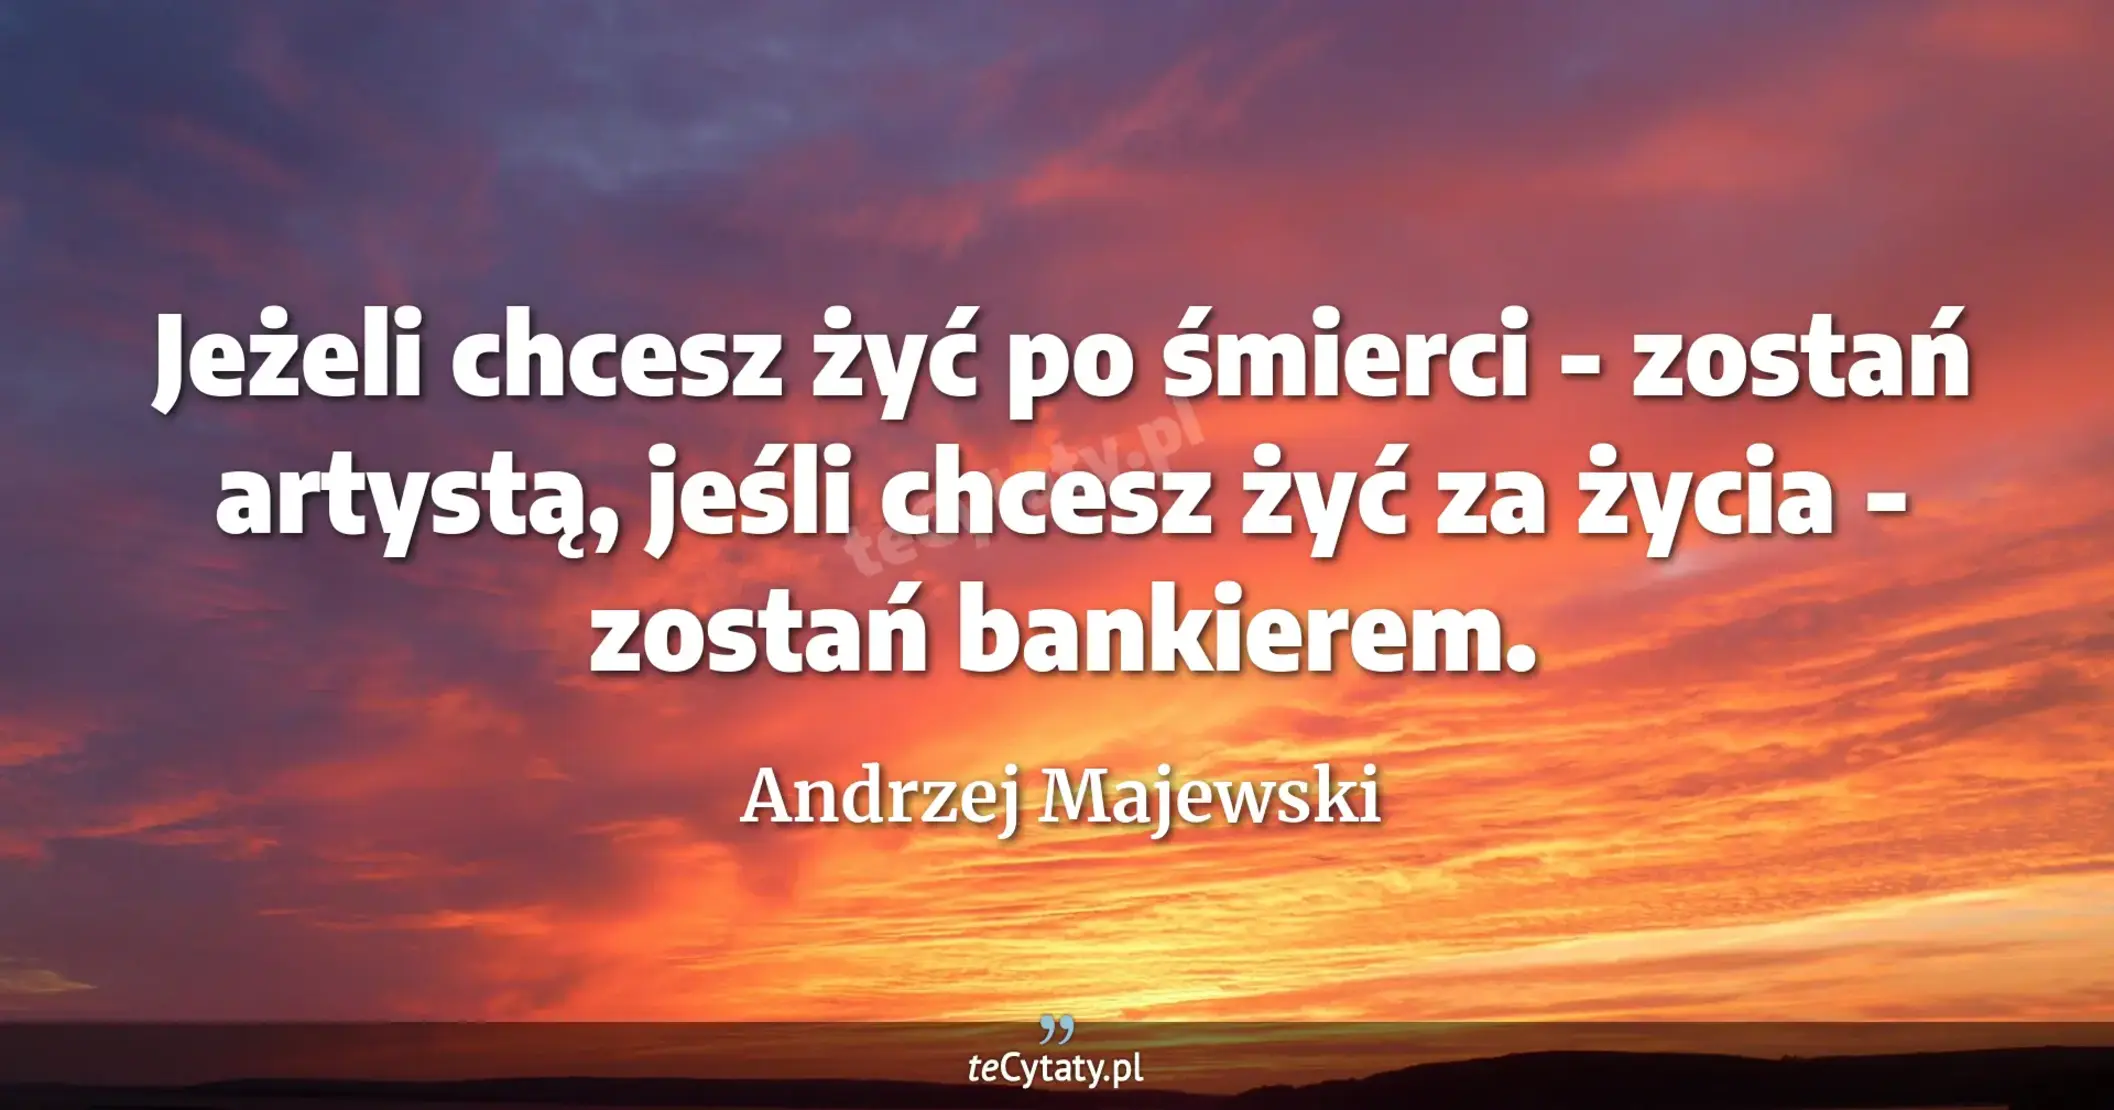 Jeżeli chcesz żyć po śmierci - zostań artystą, jeśli chcesz żyć za życia - zostań bankierem. - Andrzej Majewski